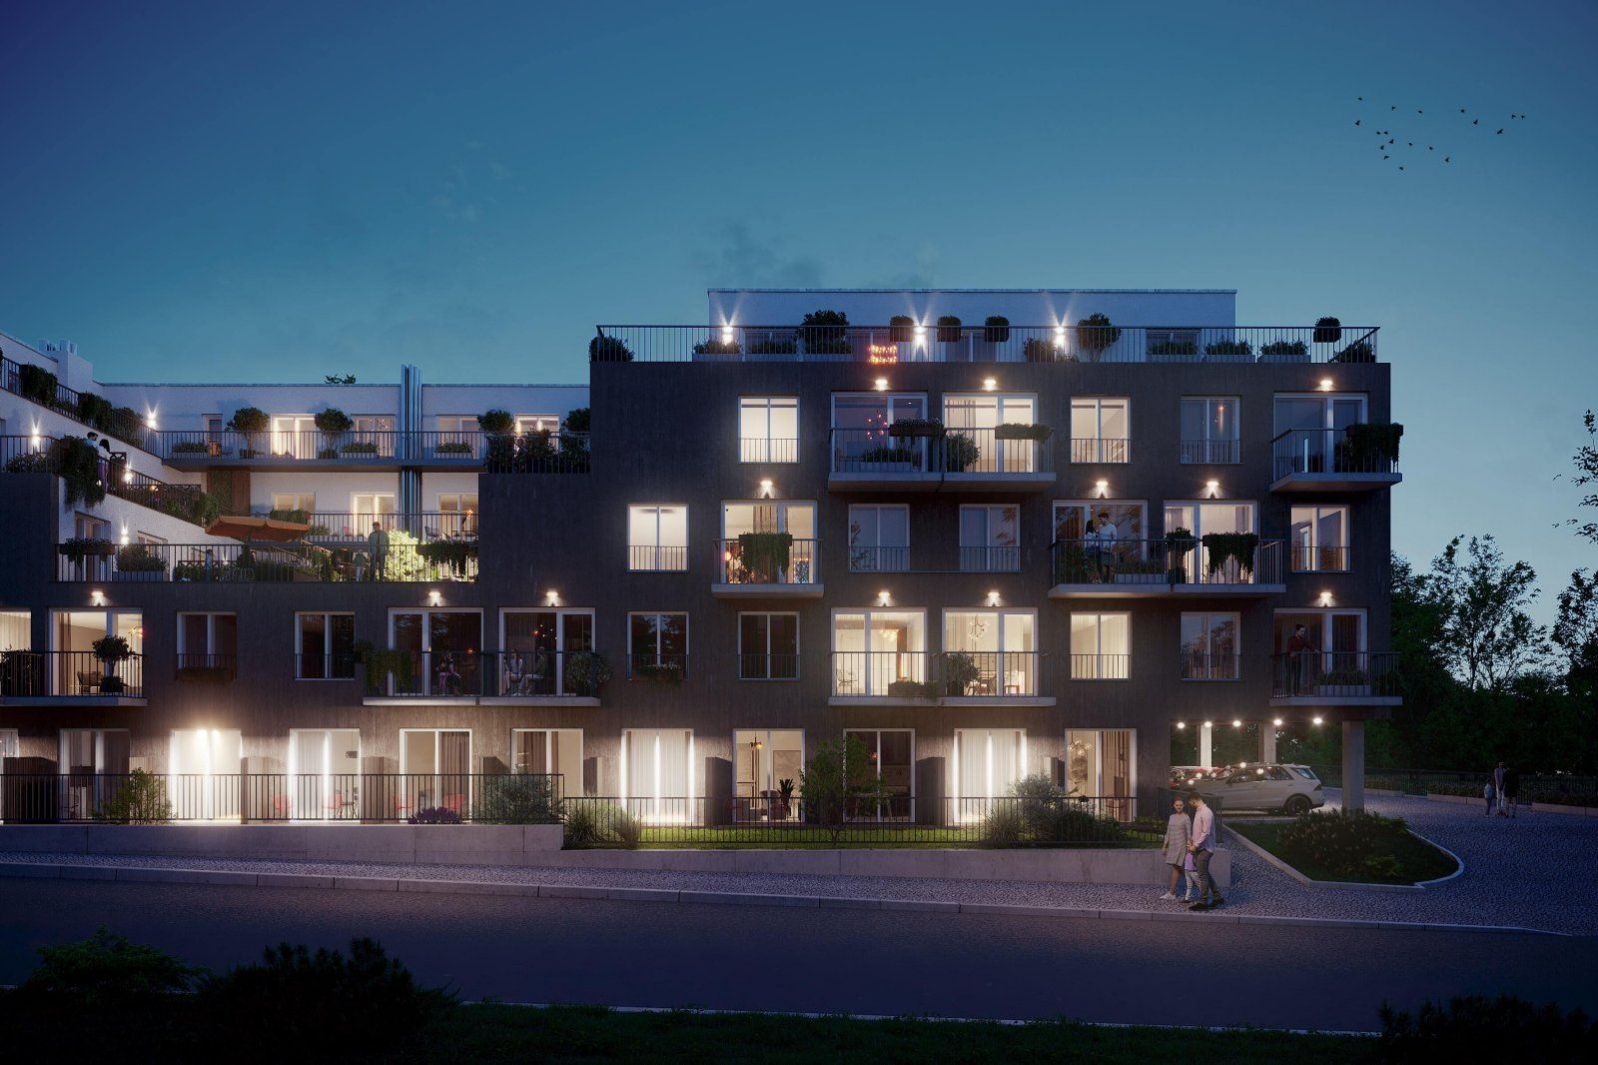 Moderní rodinný byt 3+kk s balkonem na Praze 9 v projektu Zelené kaskády. Akční sleva 347 920 Kč., obrázek č. 3